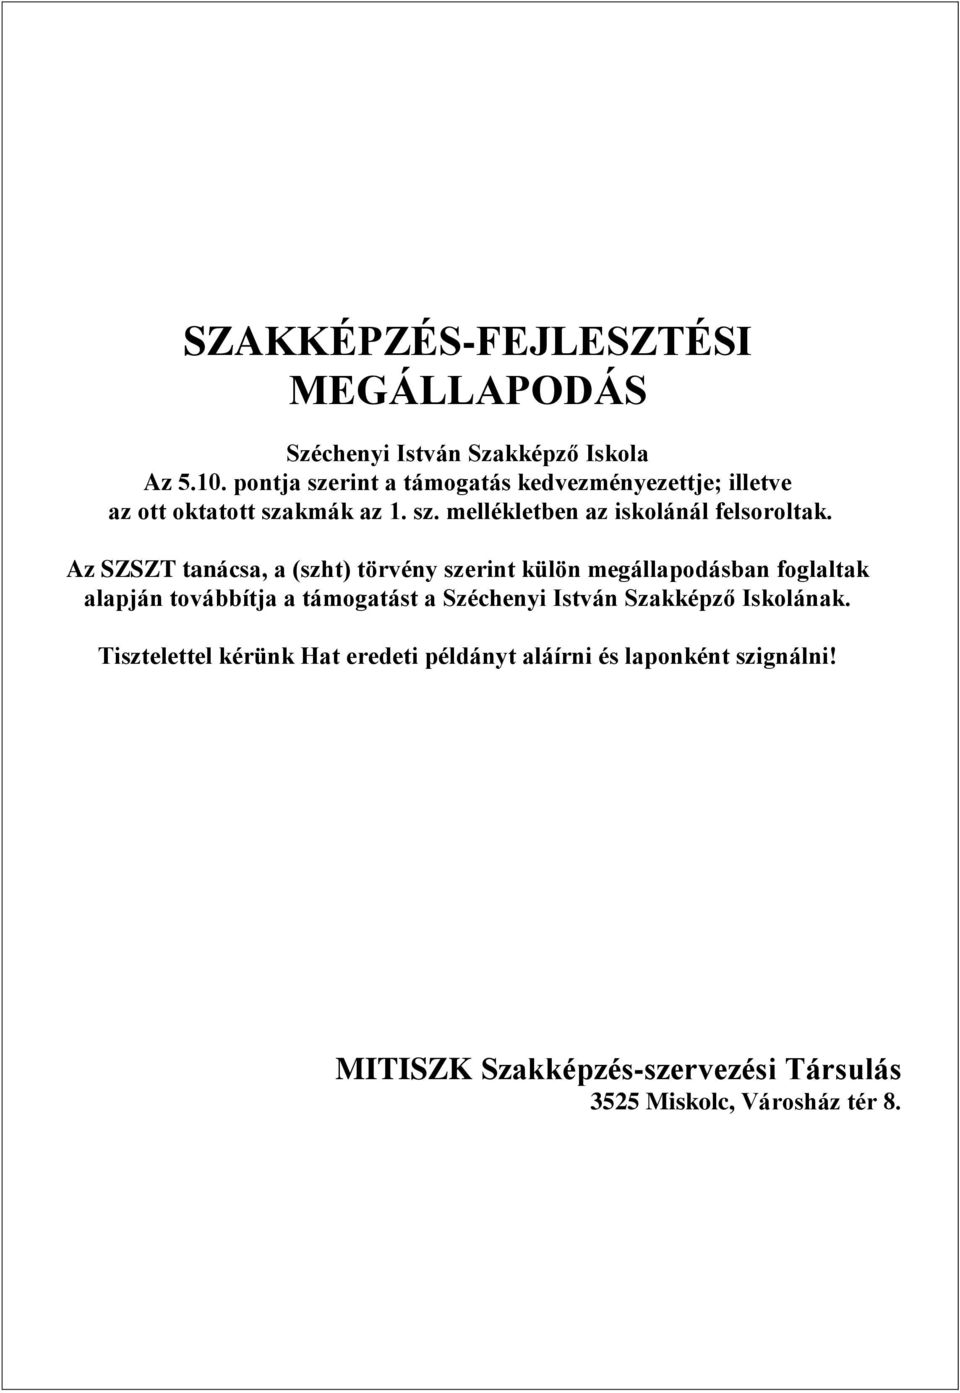 Az SZSZT tanácsa, a (szht) törvény szerint külön megállapodásban foglaltak alapján továbbítja a támogatást a Széchenyi